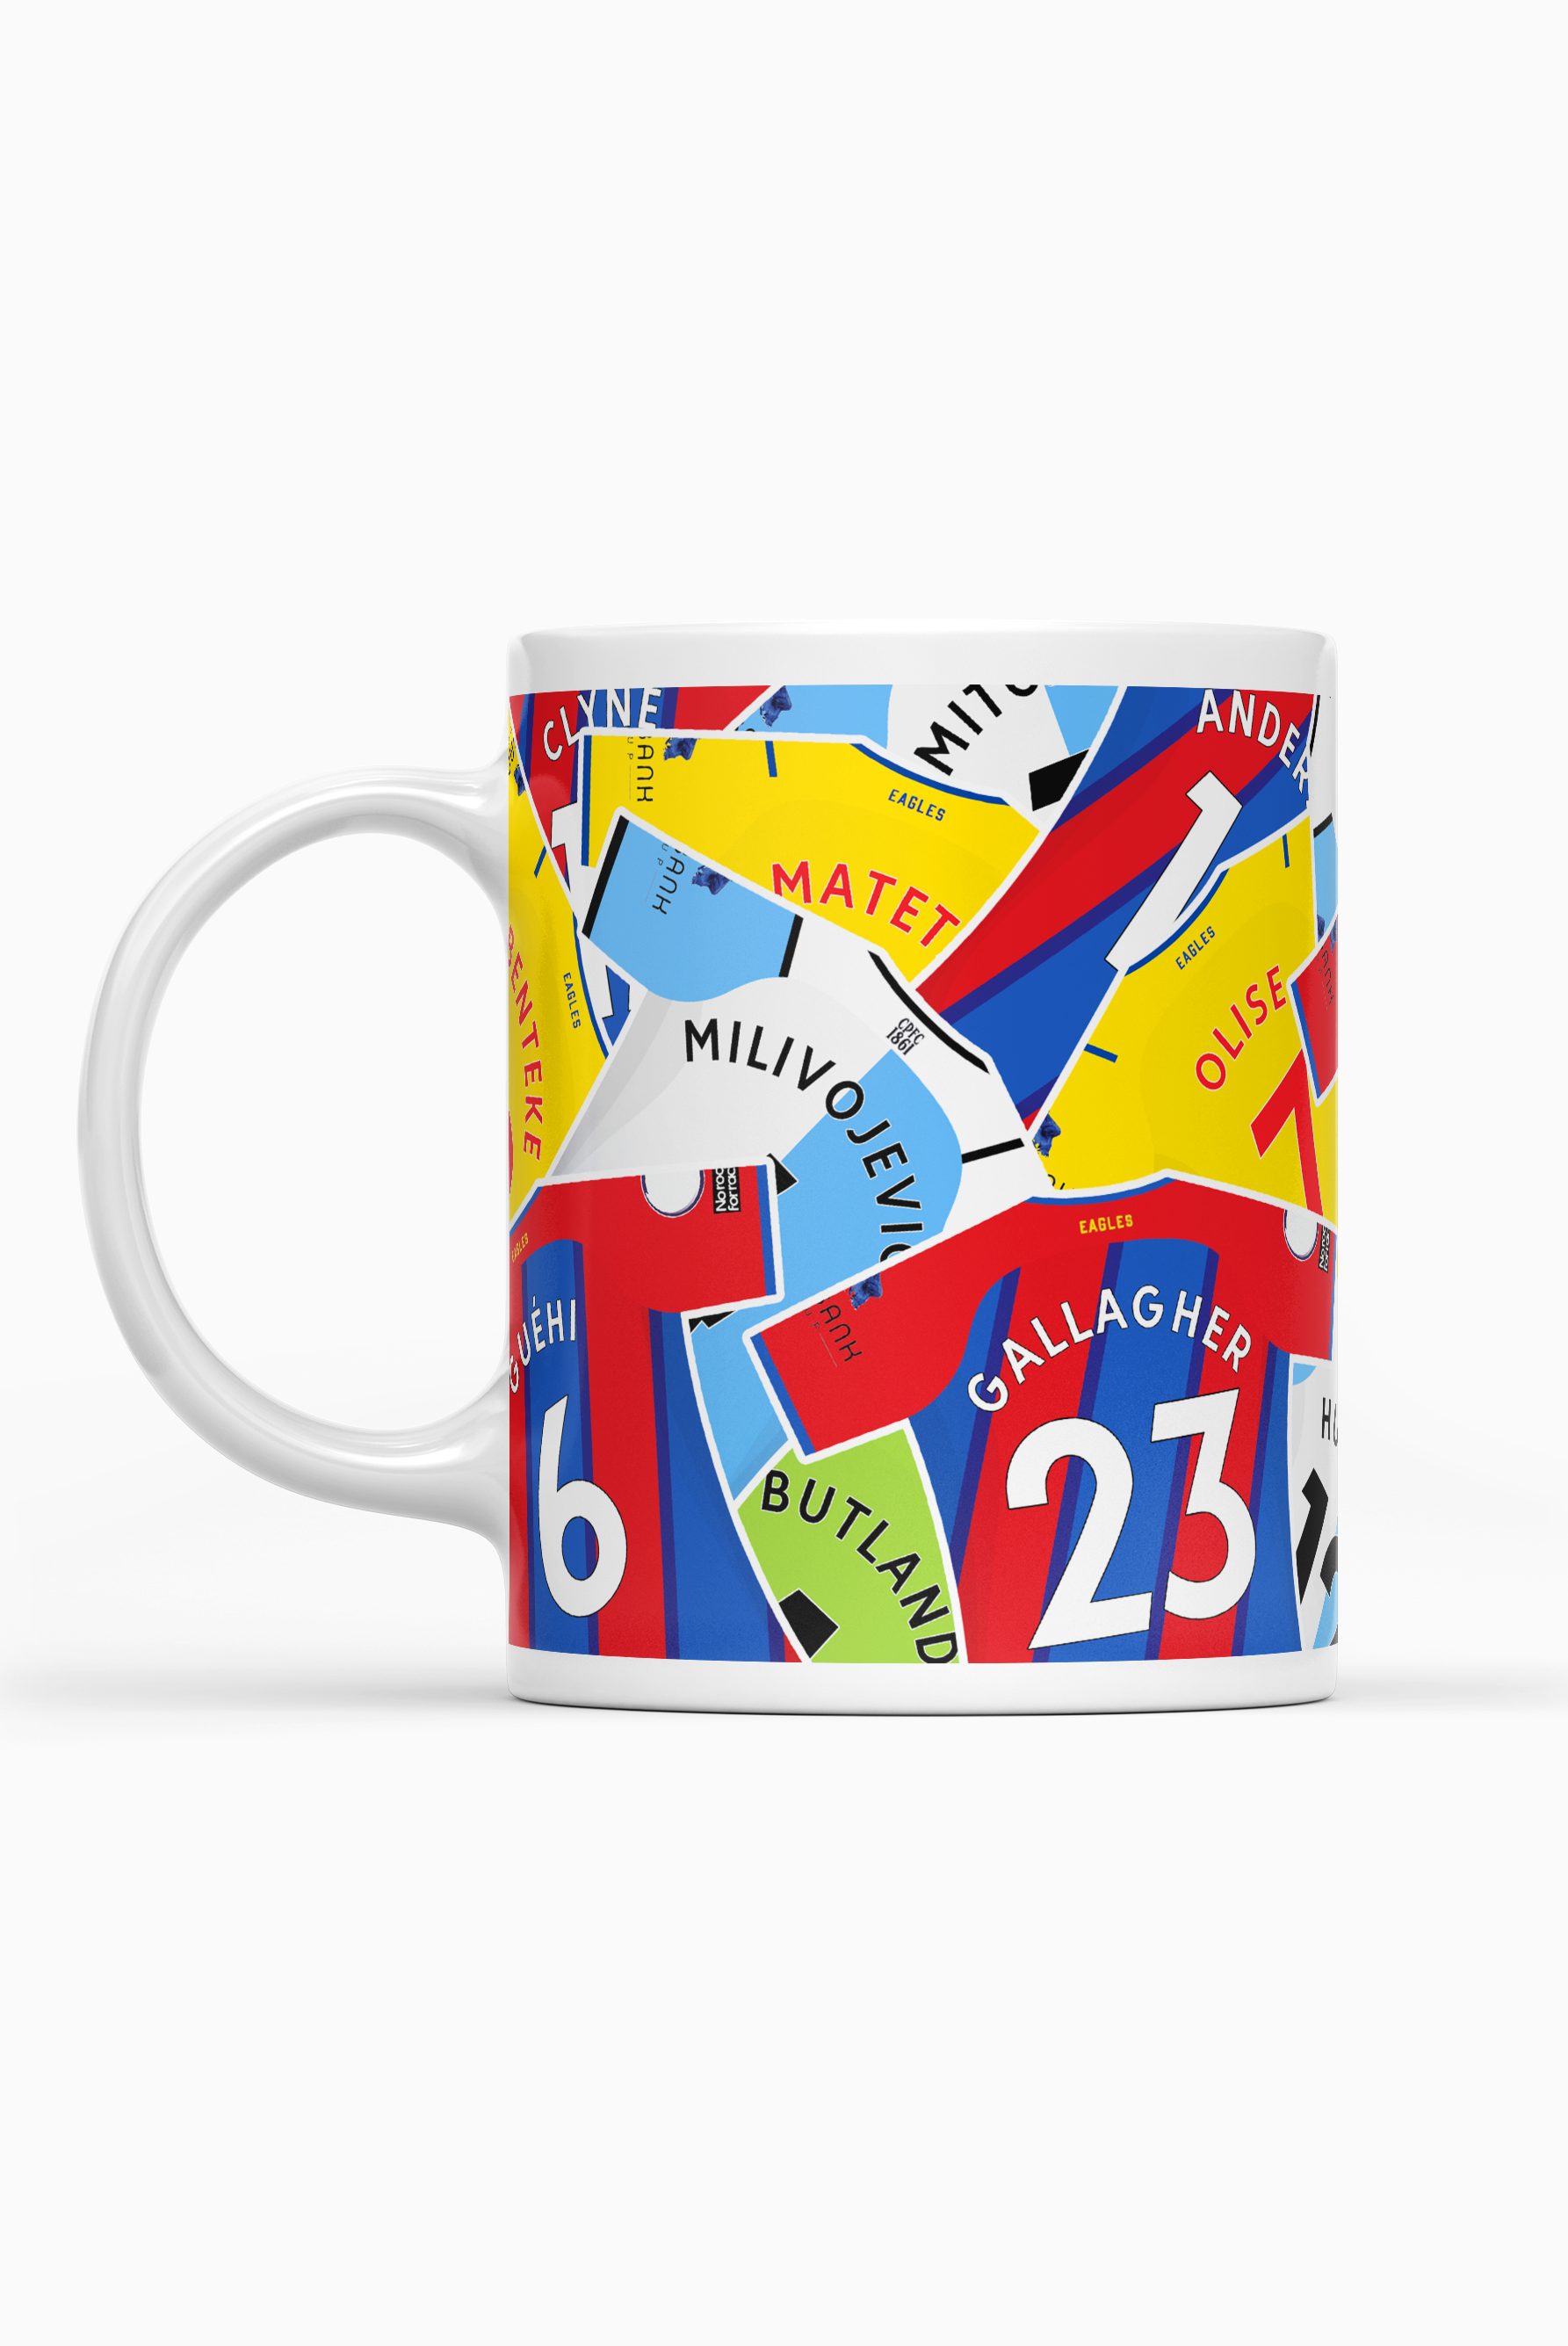 Crystal Palace / 2021-22 Squad Mug